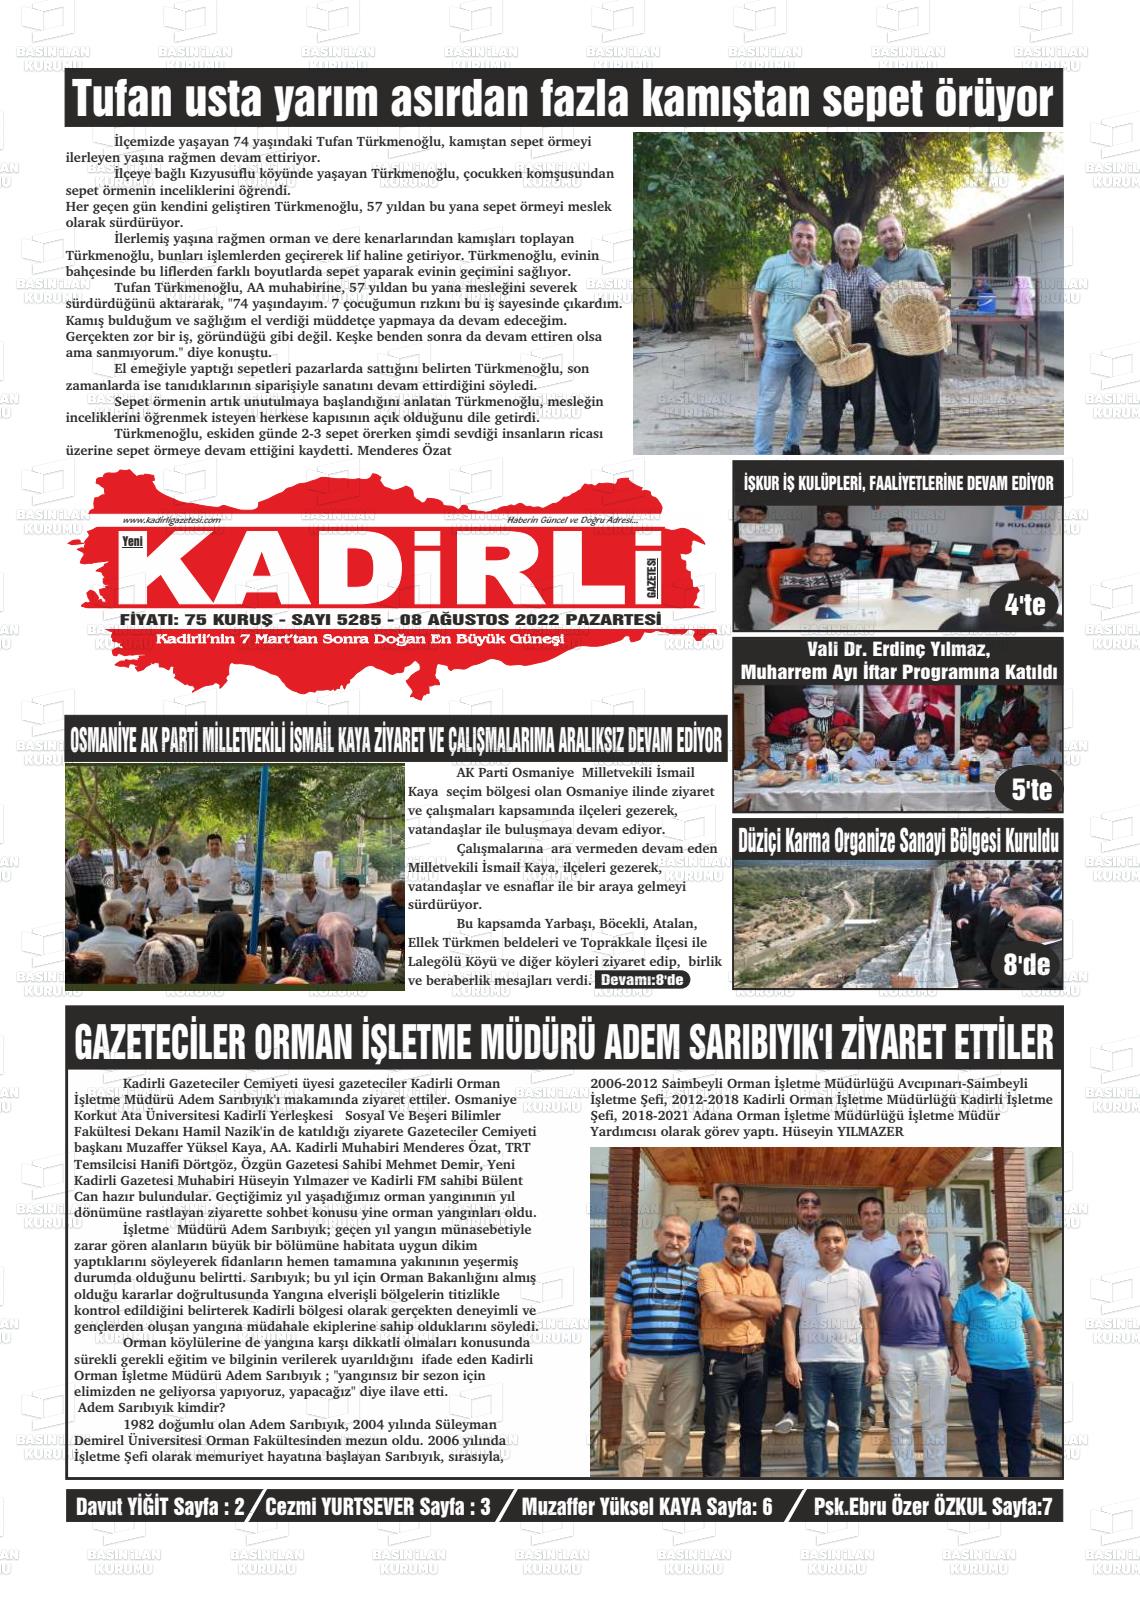 08 Ağustos 2022 Yeni Kadirli Gazete Manşeti